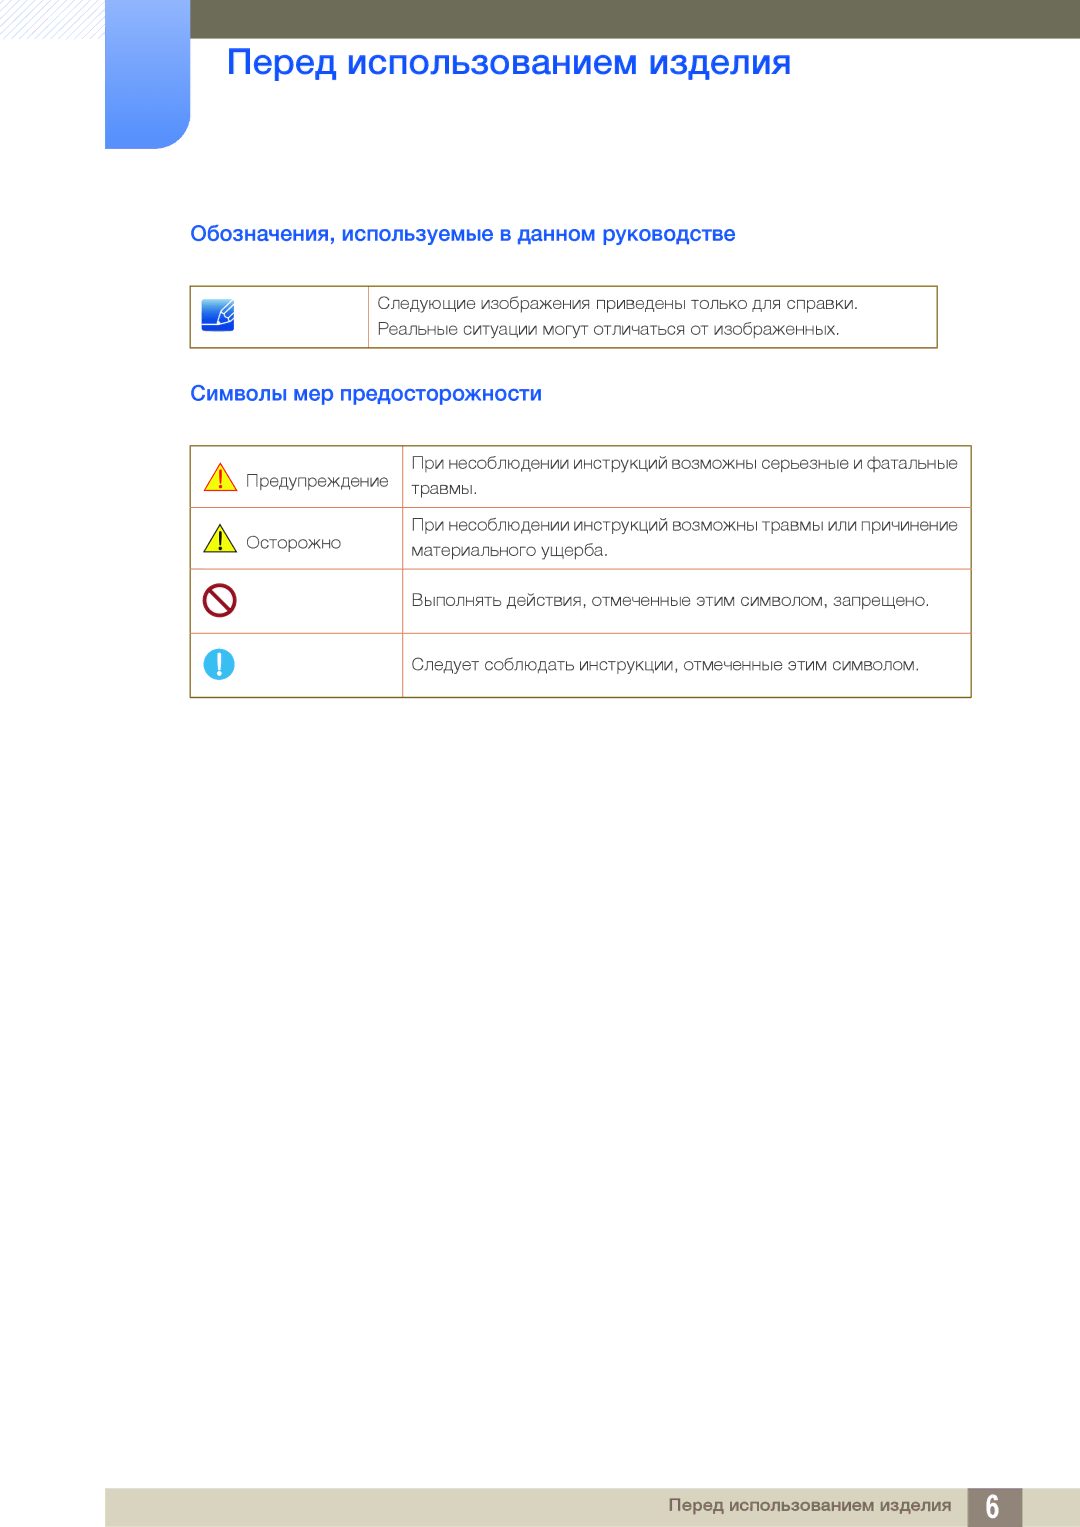 Samsung LF00FNXPFBZXCI manual Обозначения, используемые в данном руководстве, Символы мер предосторожности 